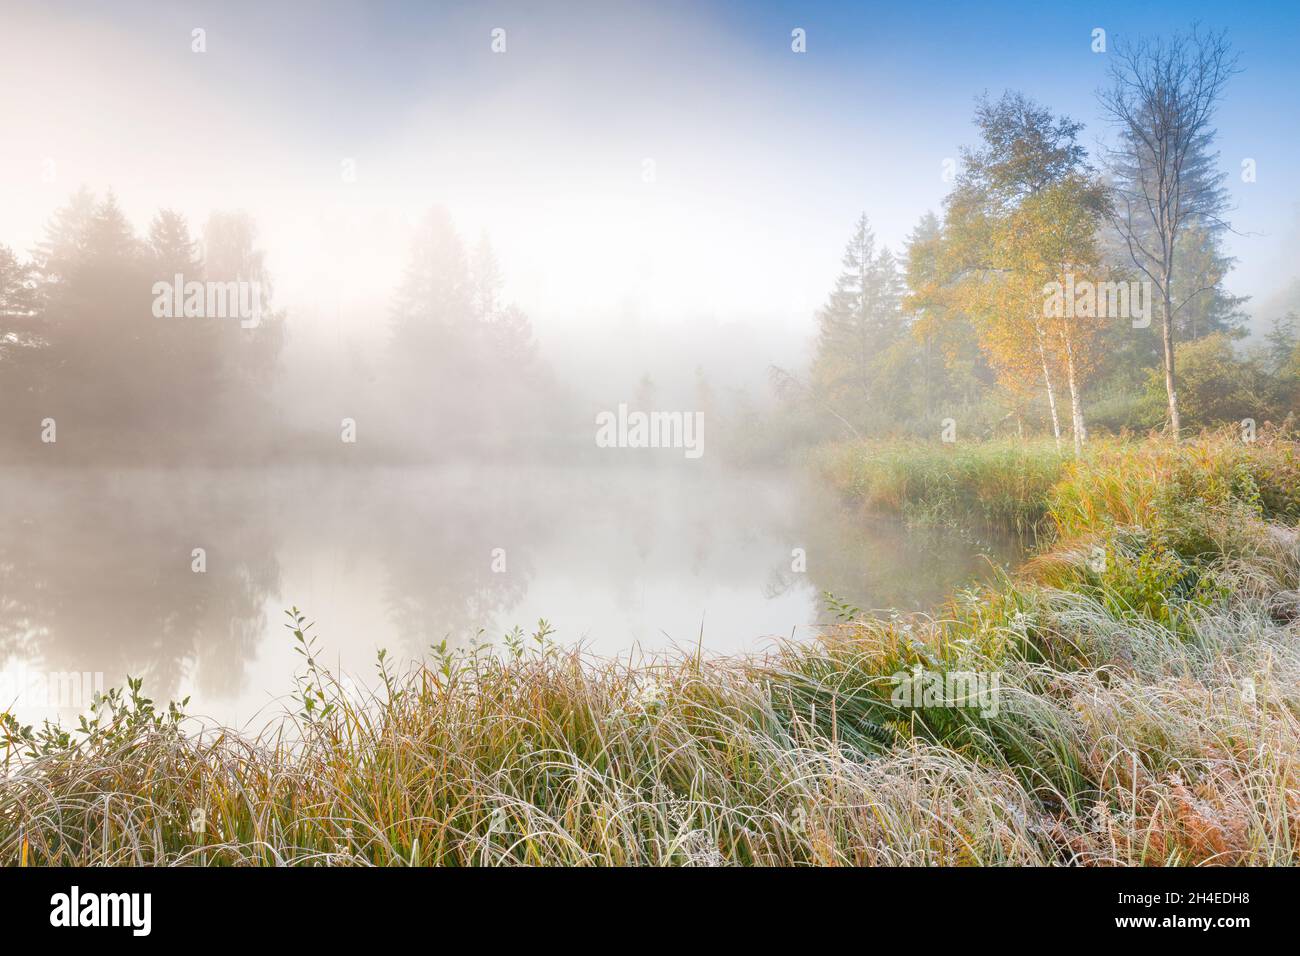 Herbstliche Stimmung an Weiher im Naturschutzgebiet Wildert in Illnau, Raureif bedeckt Vegetation und Nebelschwaden schweben über dem Wasser, Kanton Z Stock Photo